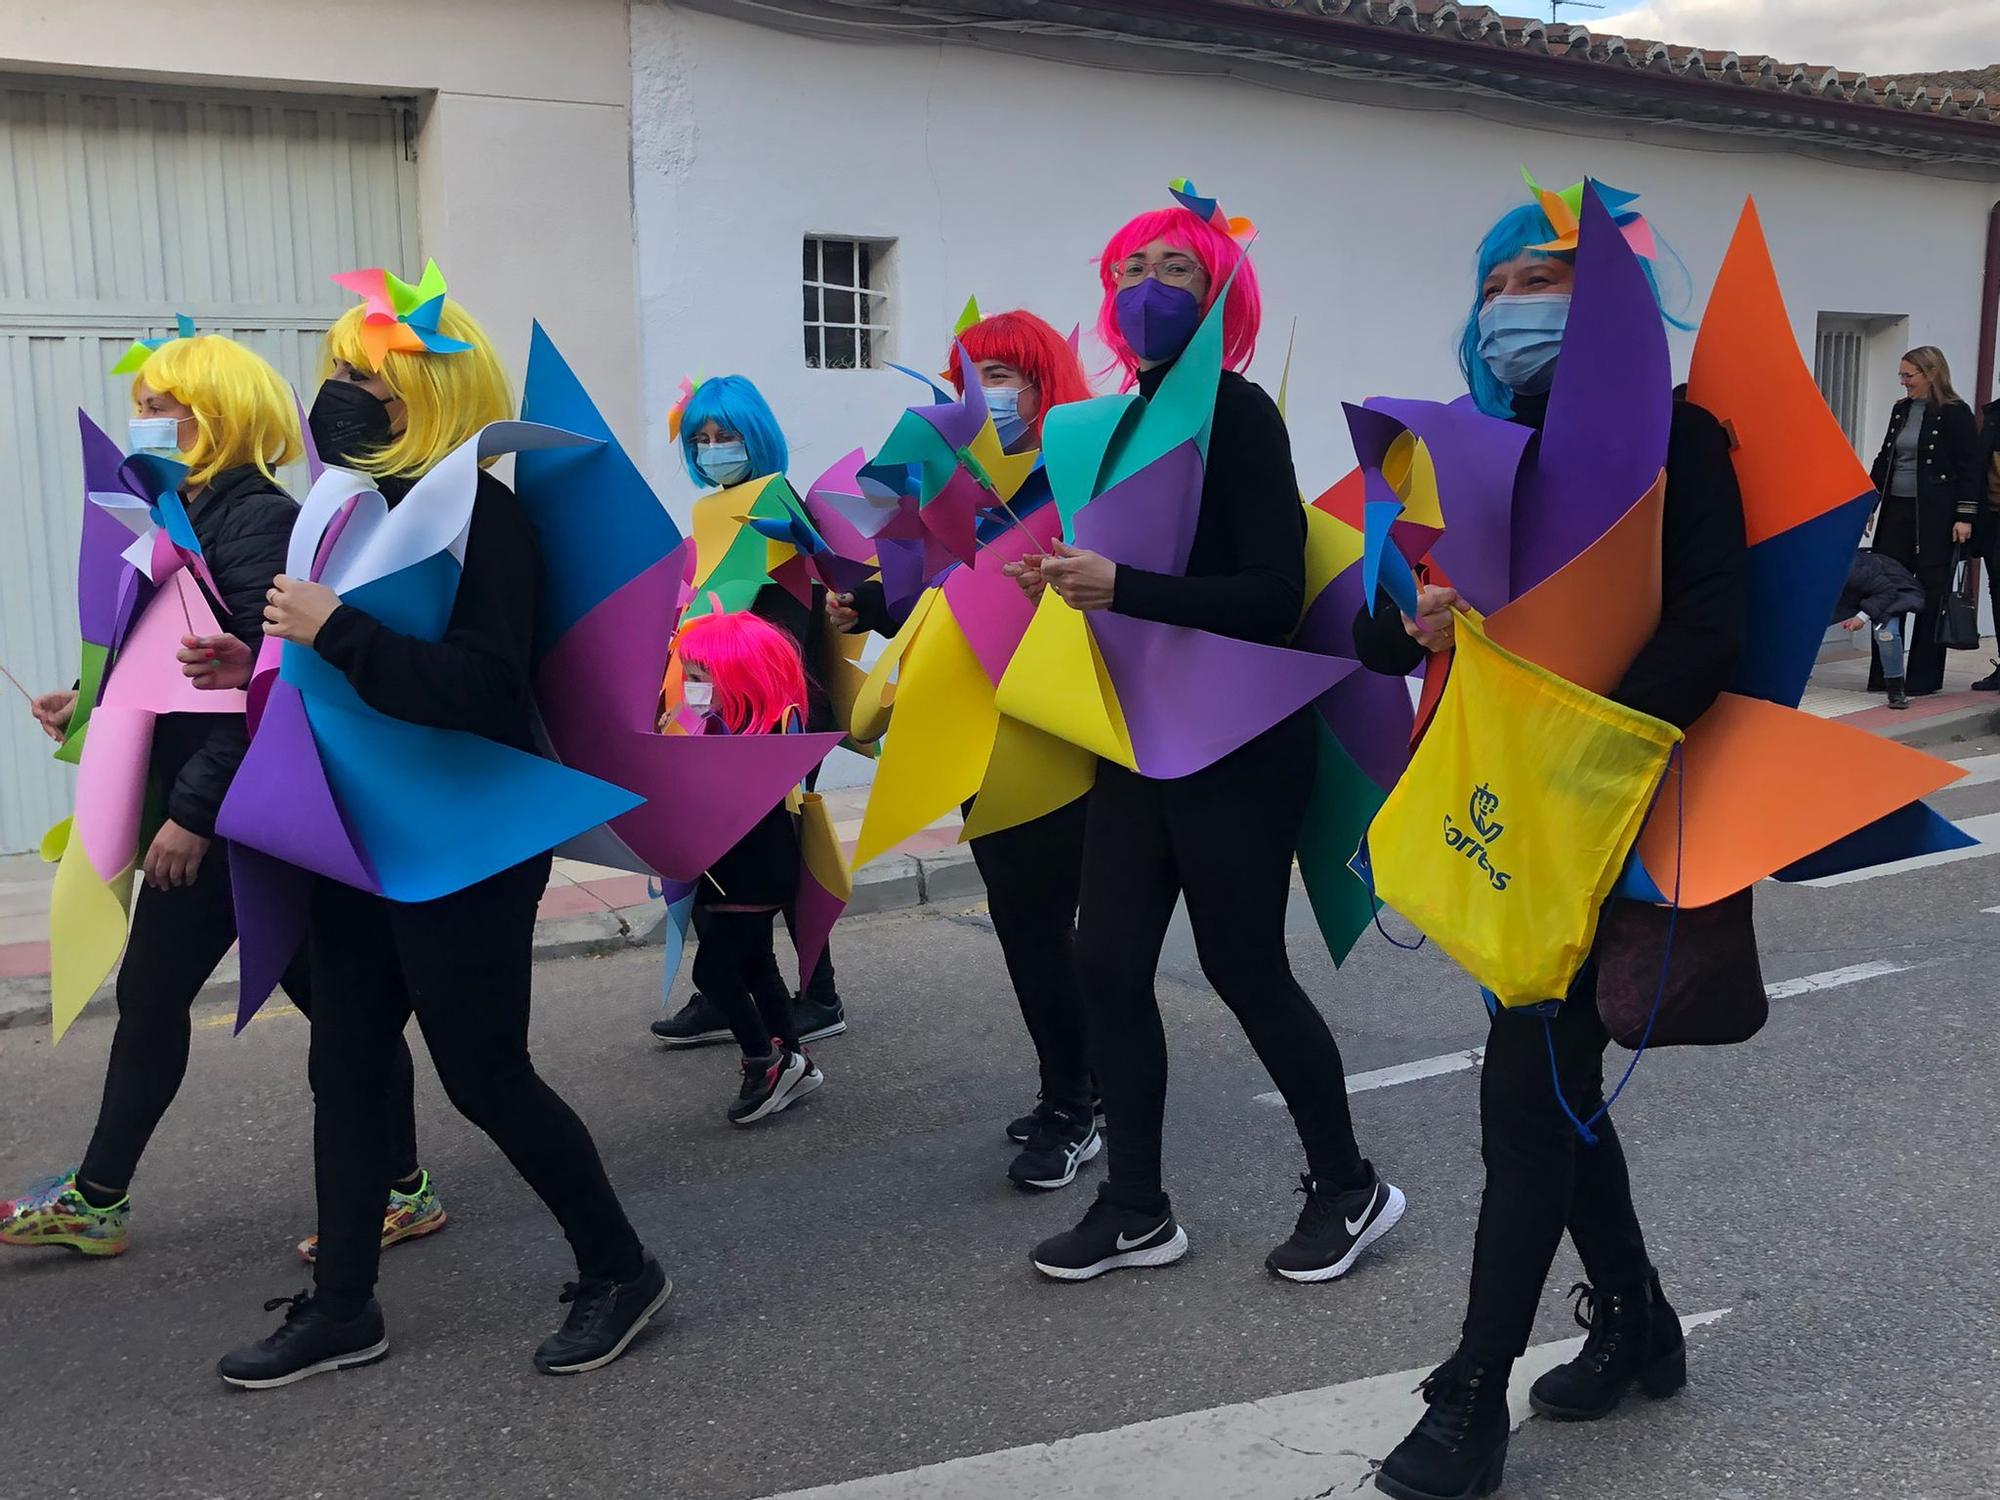 Domingo de carnaval en los pueblos de Zamora